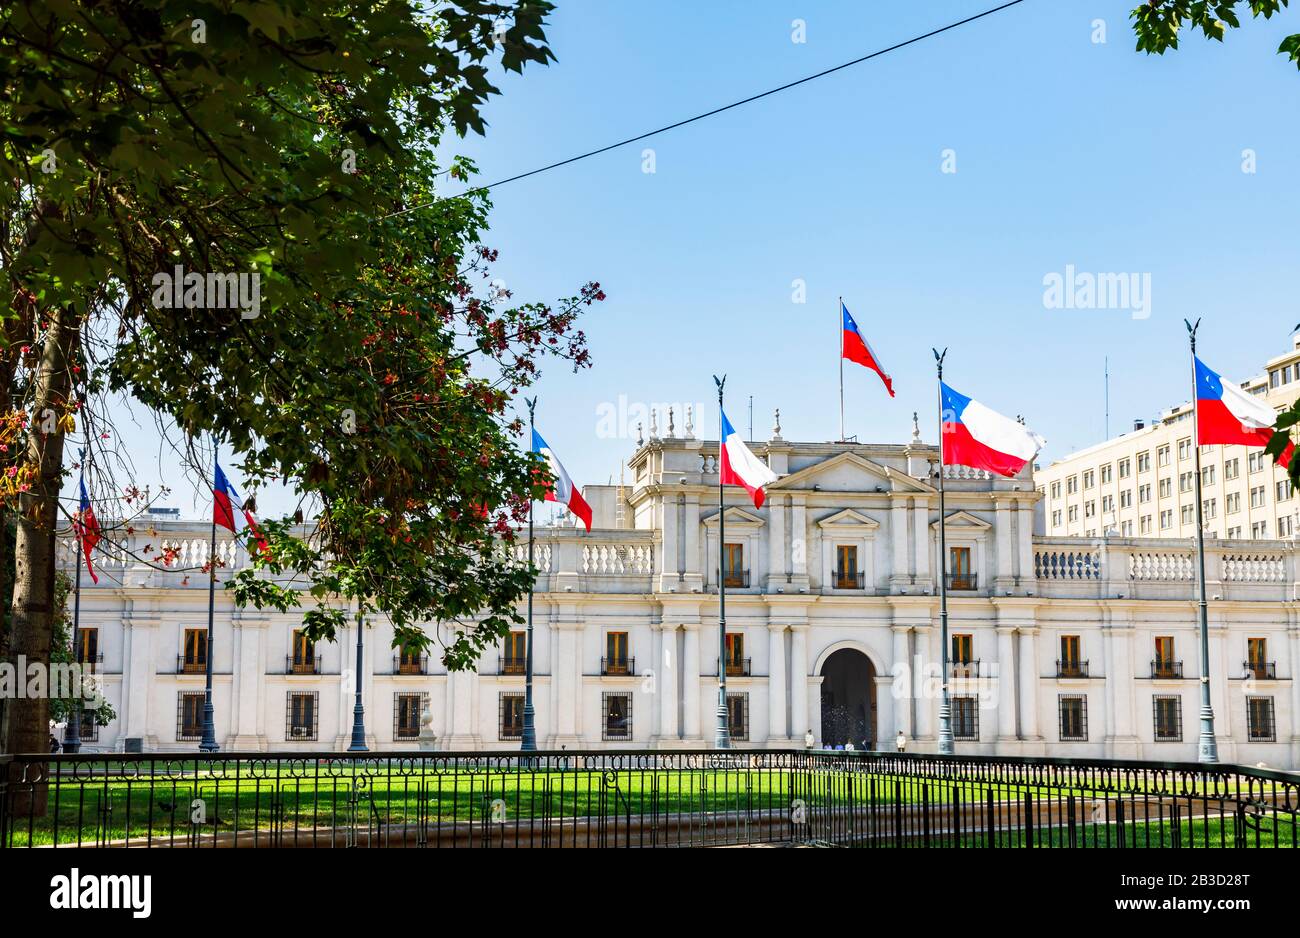 Facciata del neoclassico Palacio de la Moneda o Palazzo la Moneda, sede del Presidente della Repubblica del Cile, Santiago, capitale del Cile Foto Stock